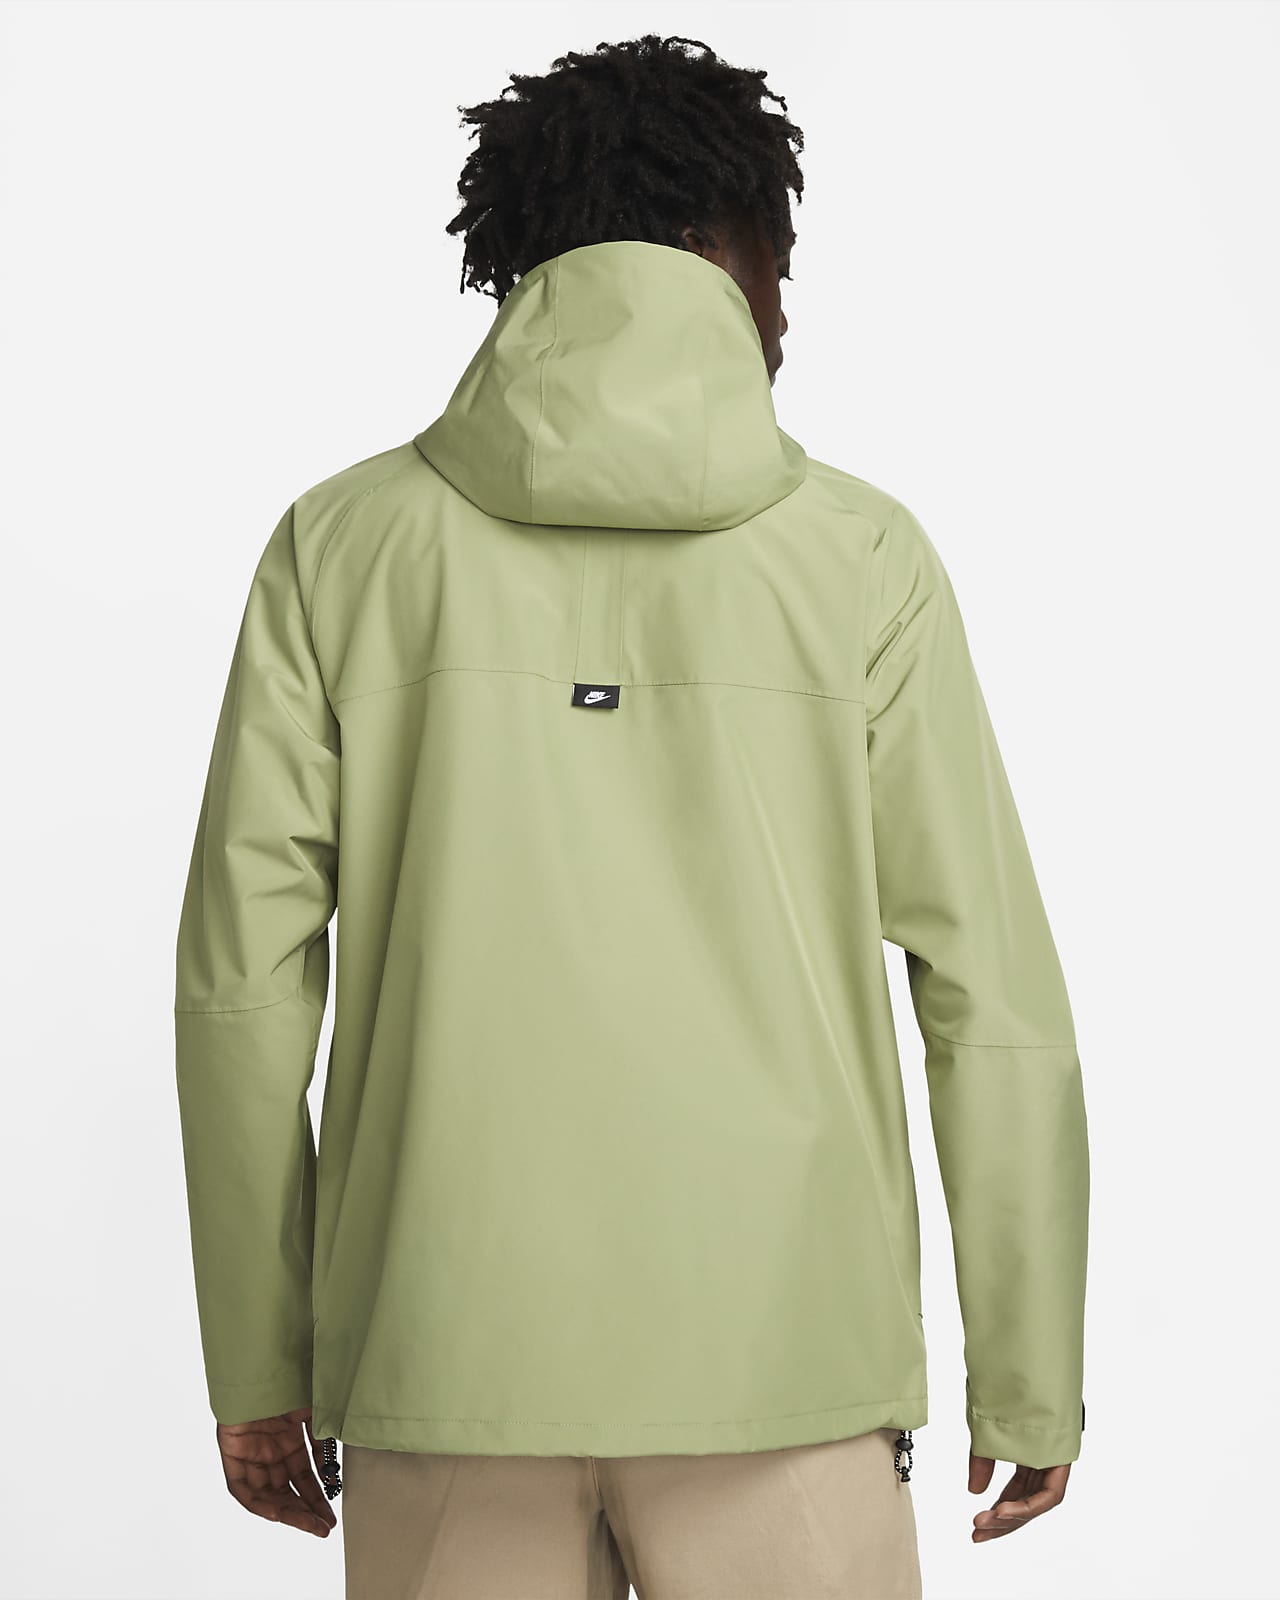 Storm-FIT Hooded Nike Legacy Men\'s Jacket. Sportswear Shell